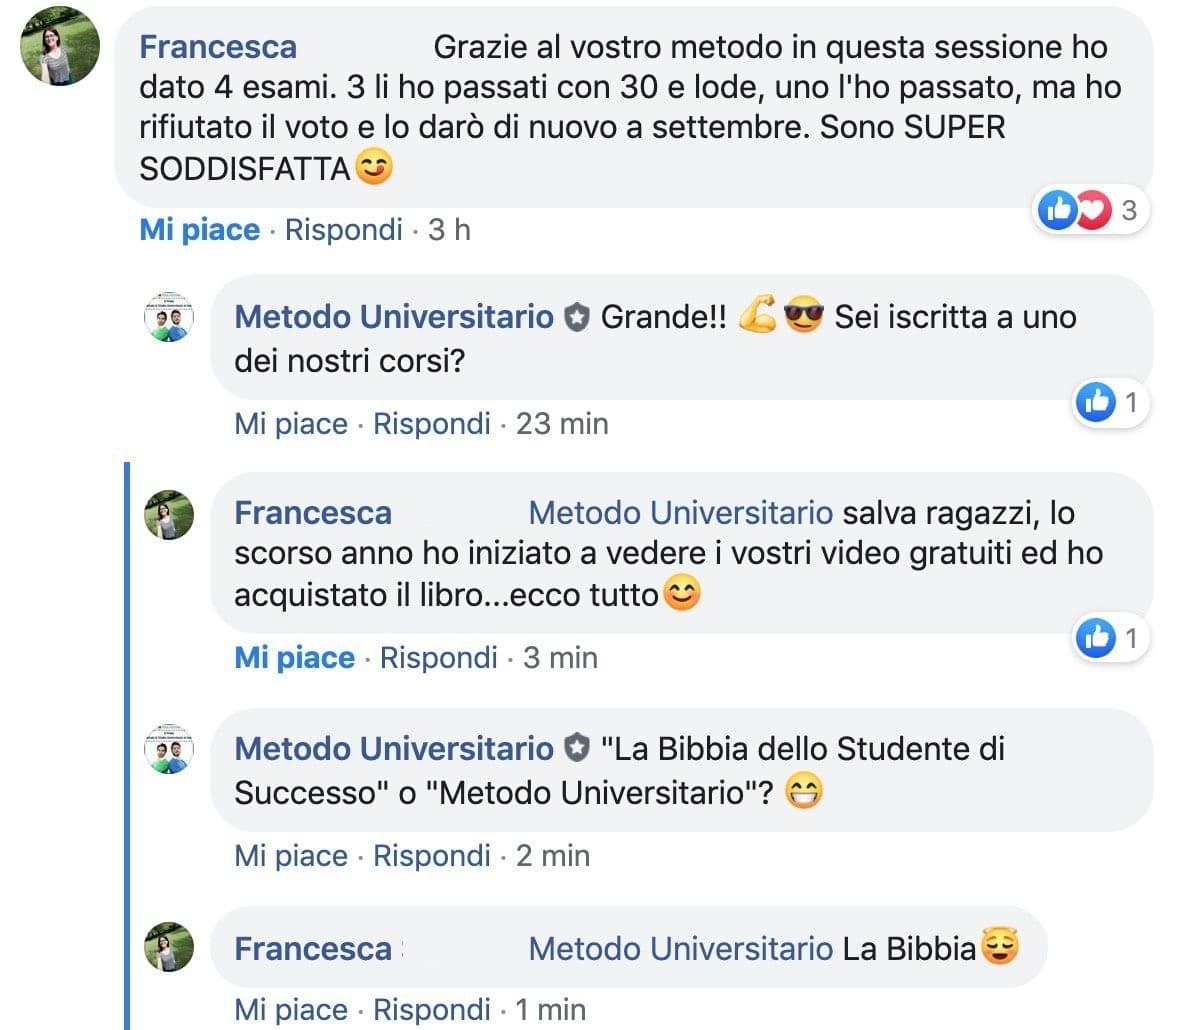 Recensione di Francesca su Metodo Universitario: "4 esami in una sessione, di cui 3 passati con 30 e lode"